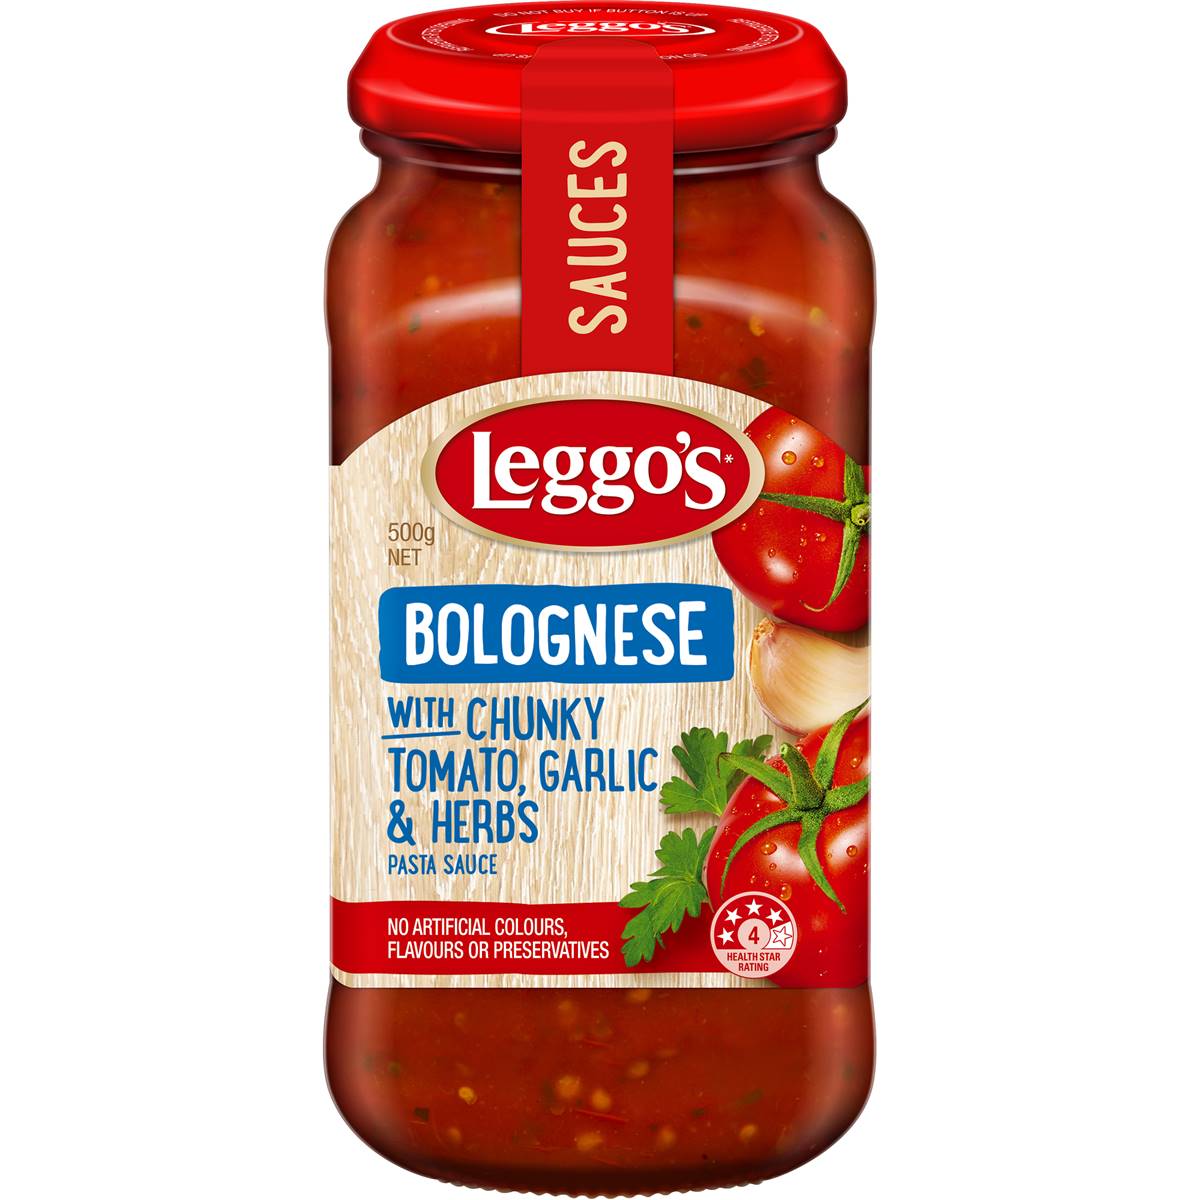 Leggos Pasta Sauce Bolognese Tomato Garlic & Herbs 500g